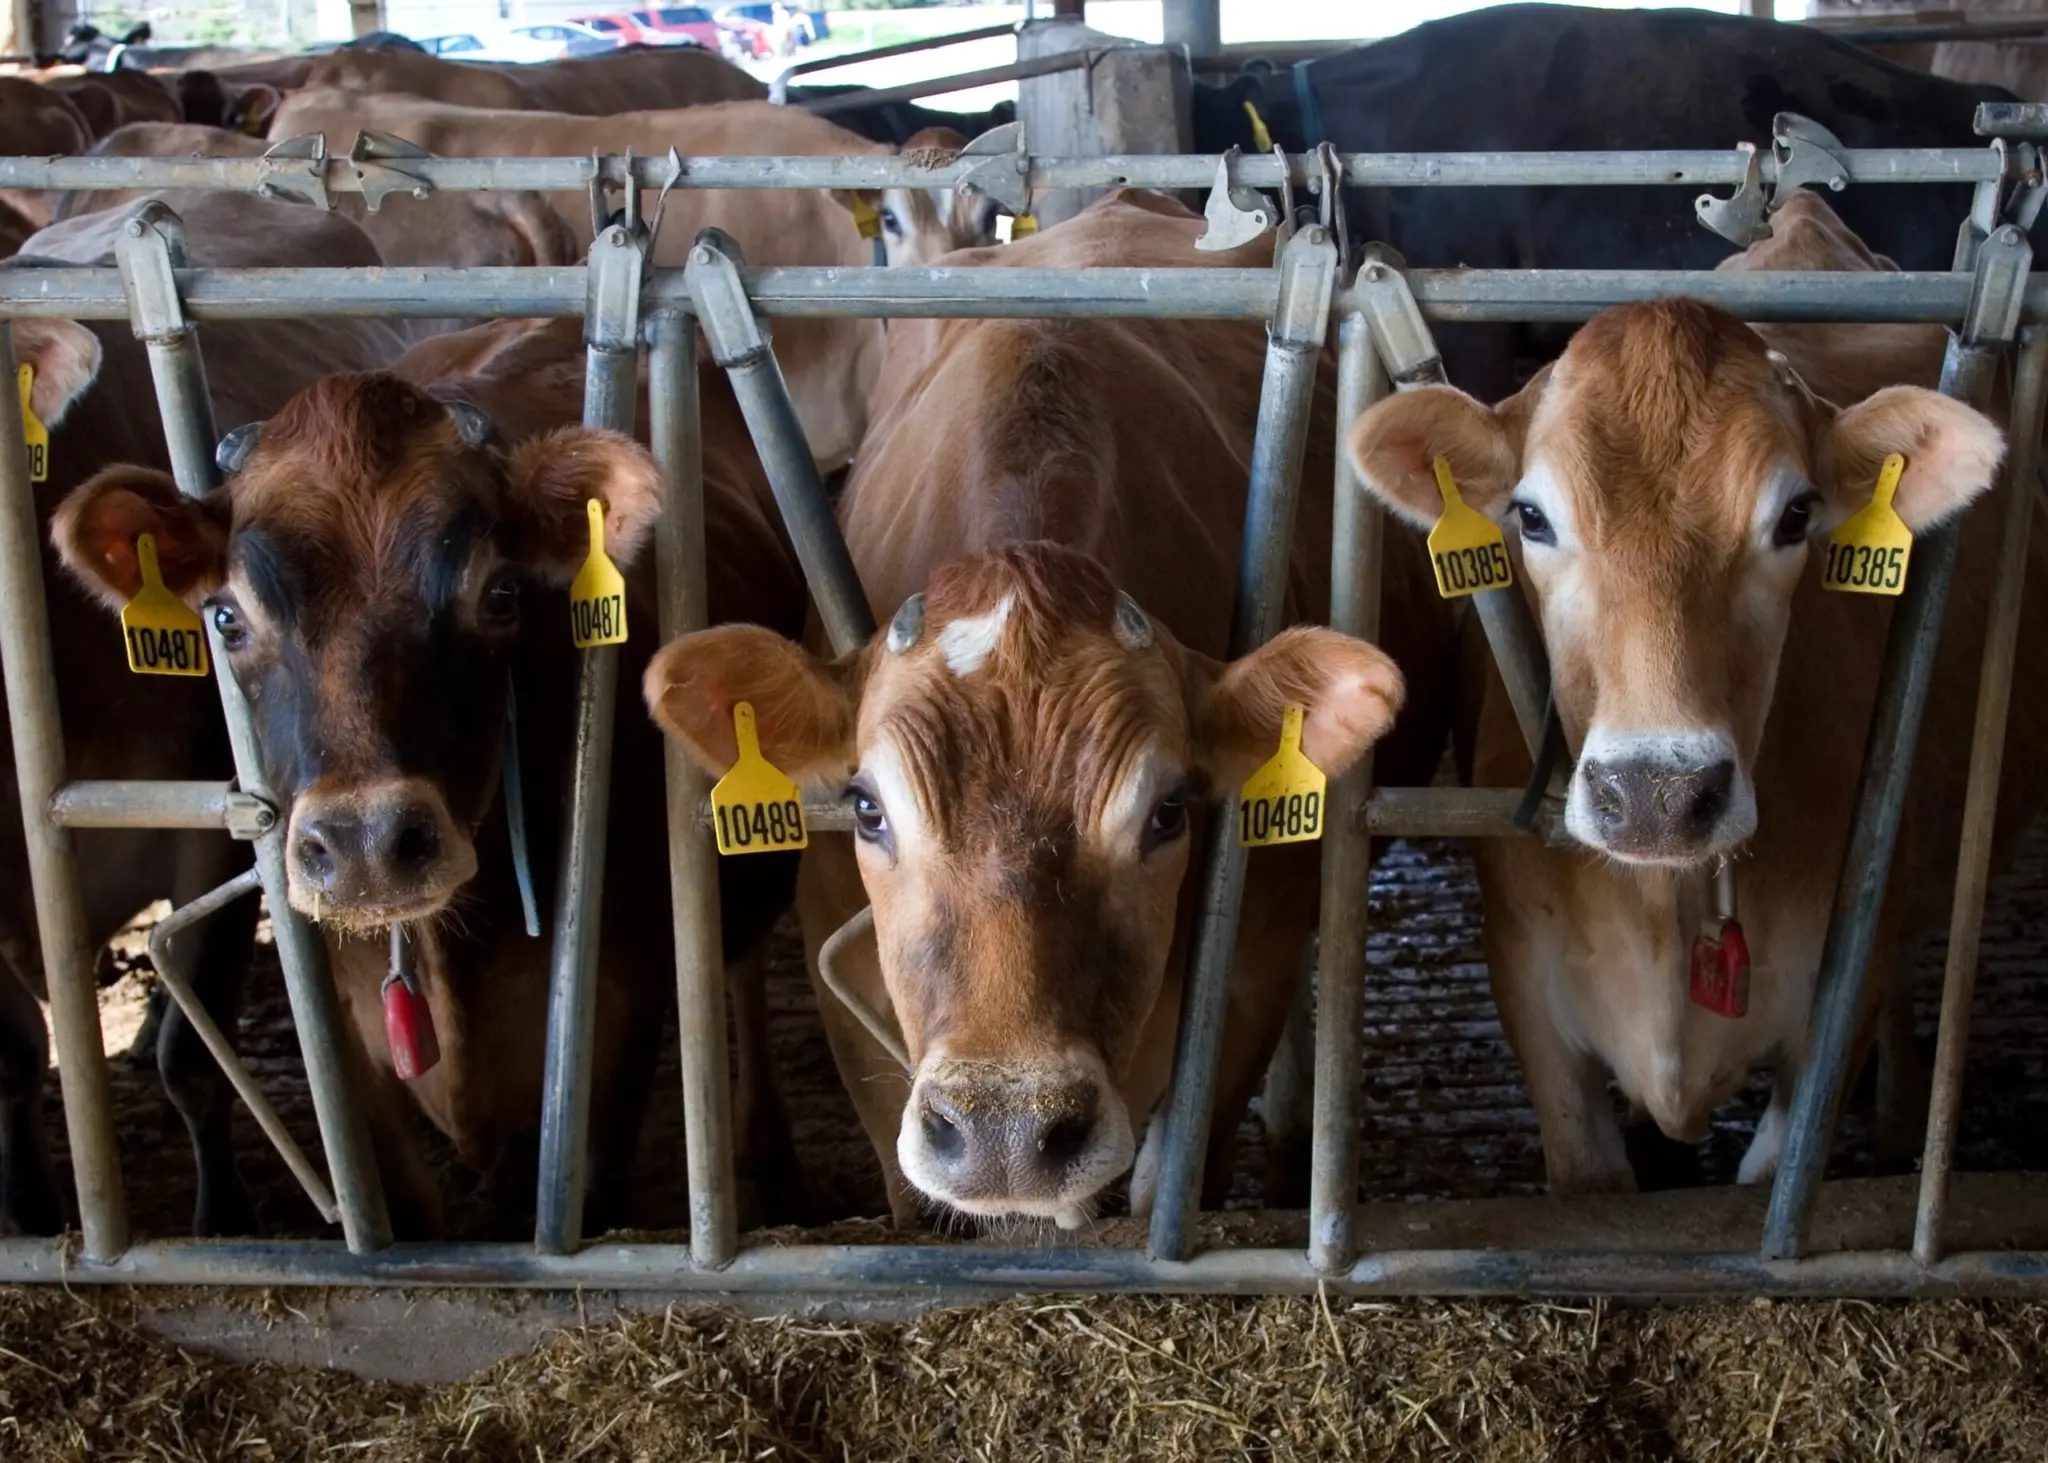 farm cows